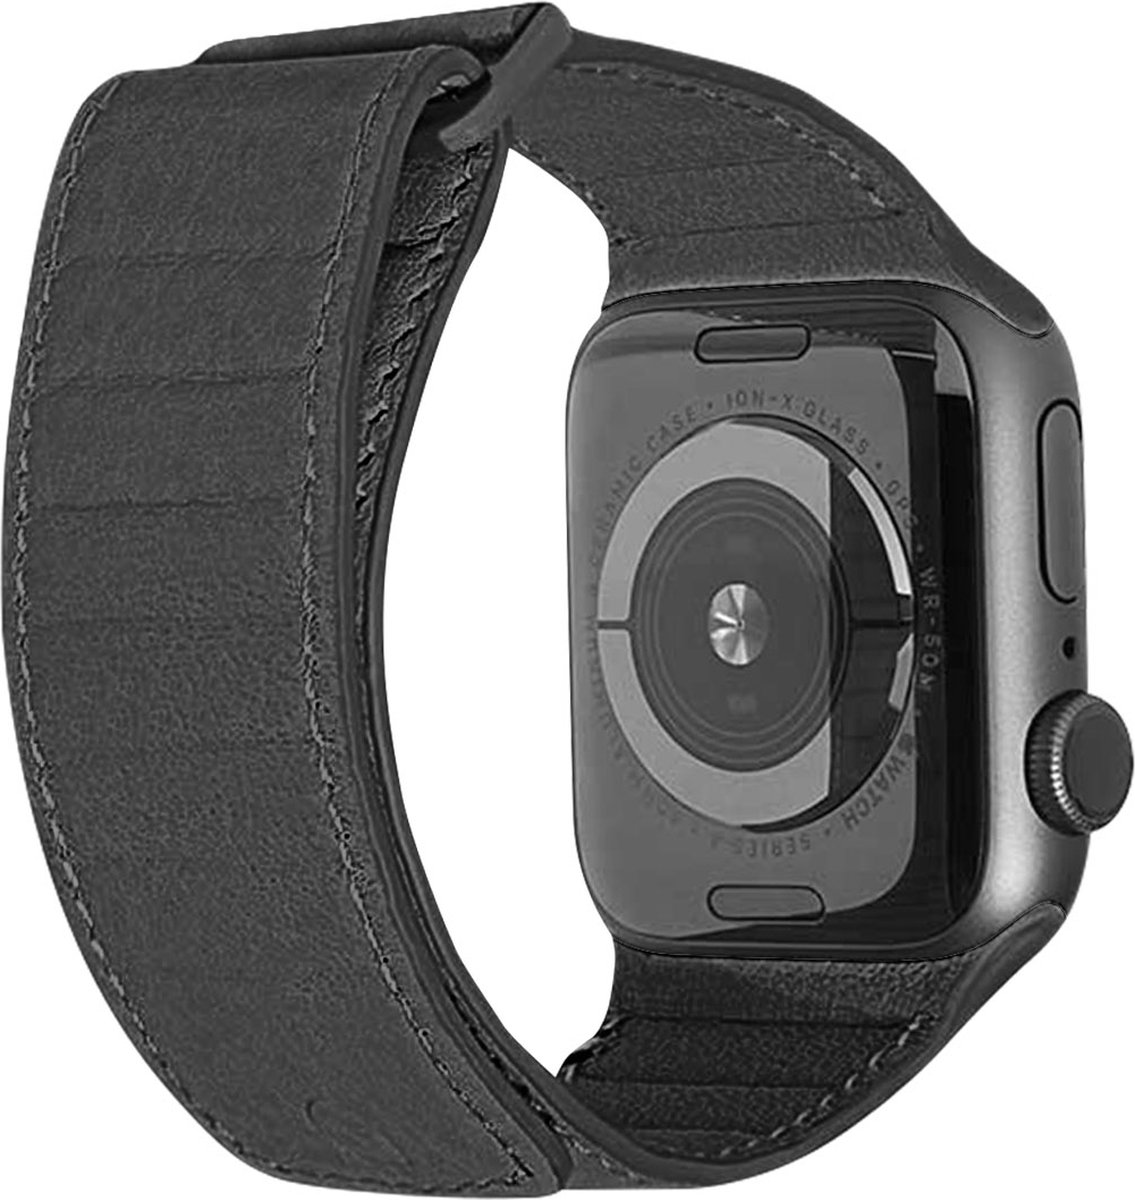 DECODED Traction Strap - Magnetische Horloge Band geschikt voor Apple Watch 6 / SE / 5 / 4 (44 mm) en Apple Watch 3 / 2 / 1 (42 mm) - Magneetsluiting - Zwart - Decoded